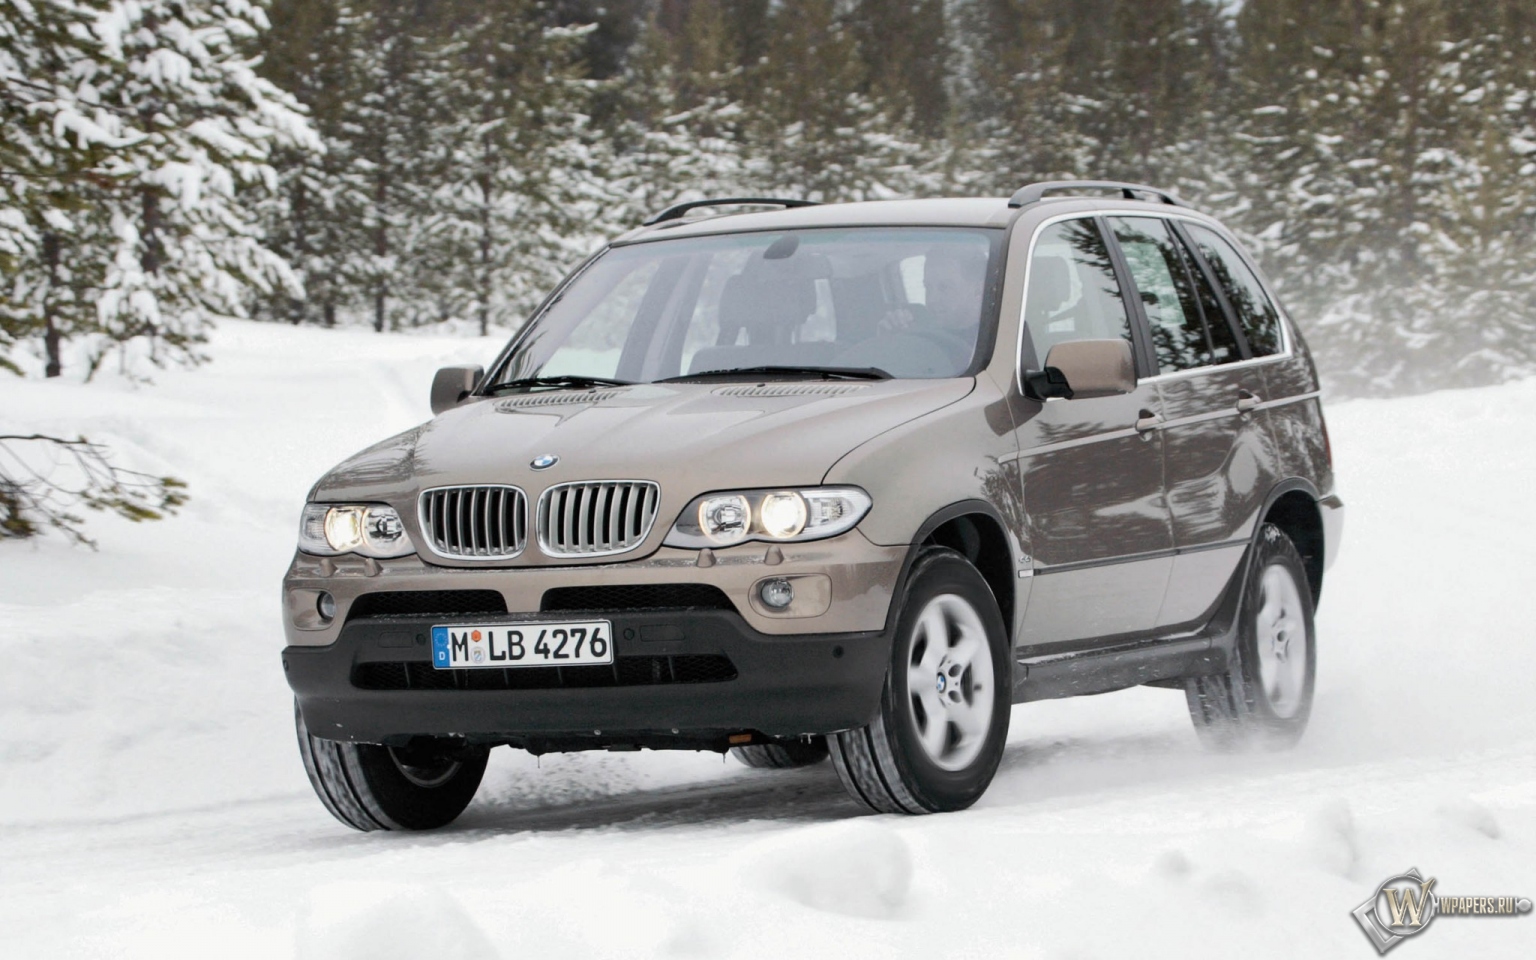 BMW X5 (2004) 1536x960